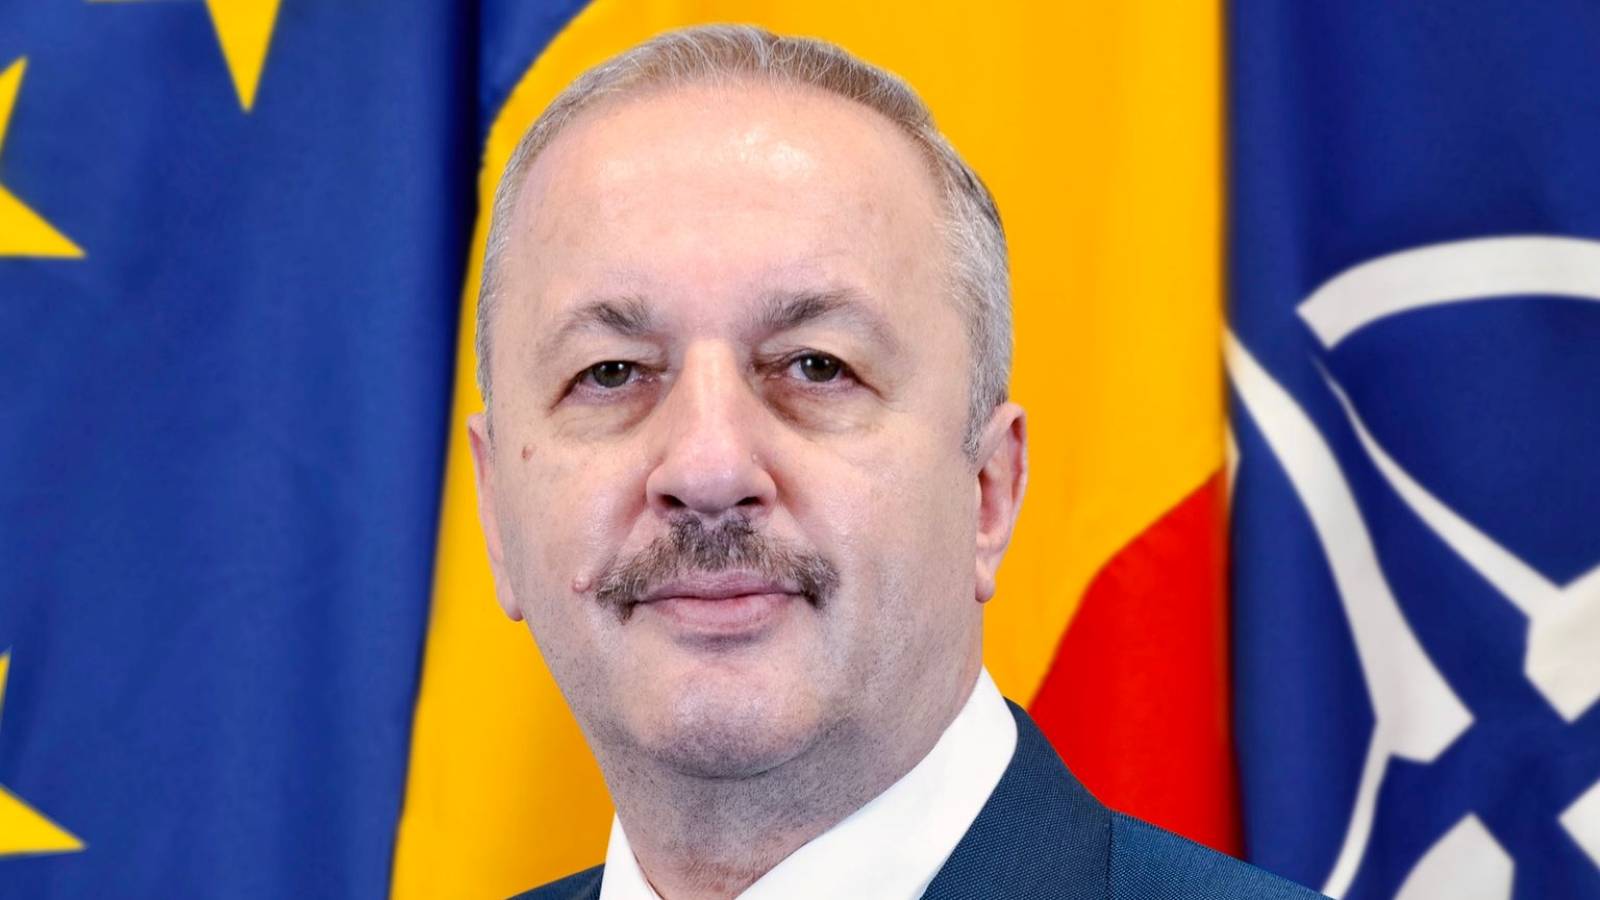 Vasile Dîncu Atentionarea Oficiala Incorporarea Mobilizarea Romanilor